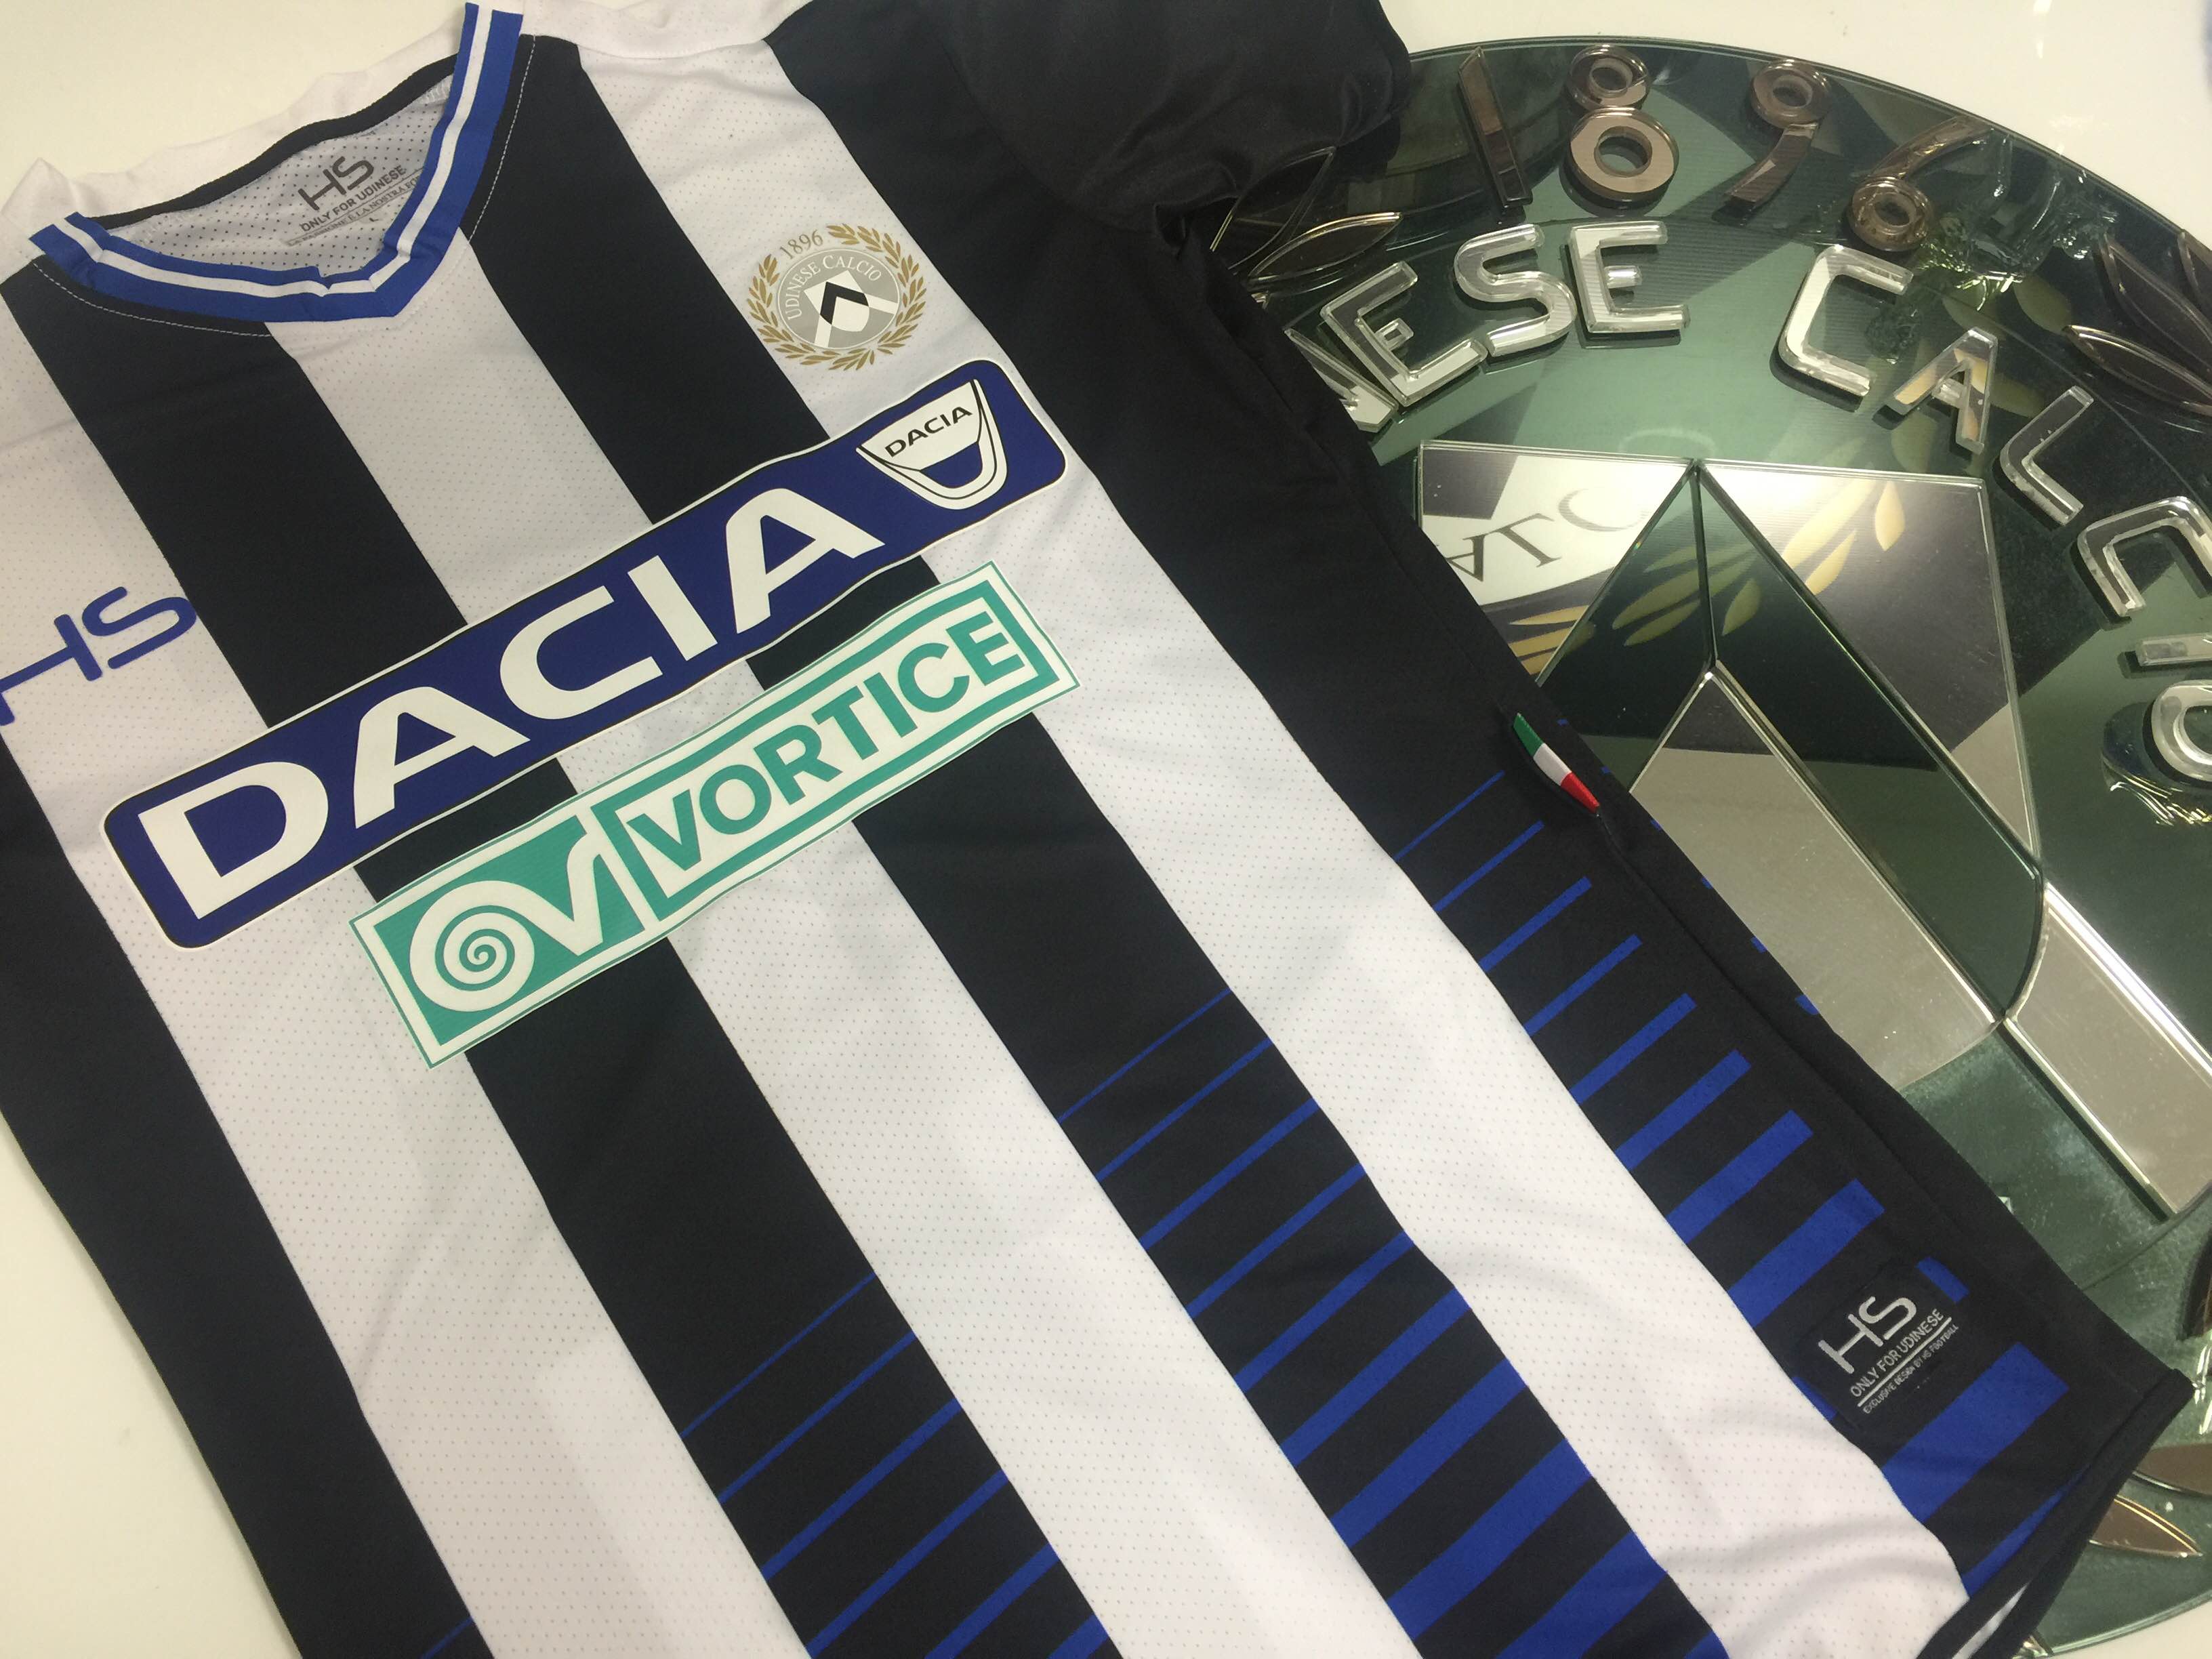 Vortice Nuovo Co Sponsor Della Maglia Dell Udinese Calcio Sporteconomy